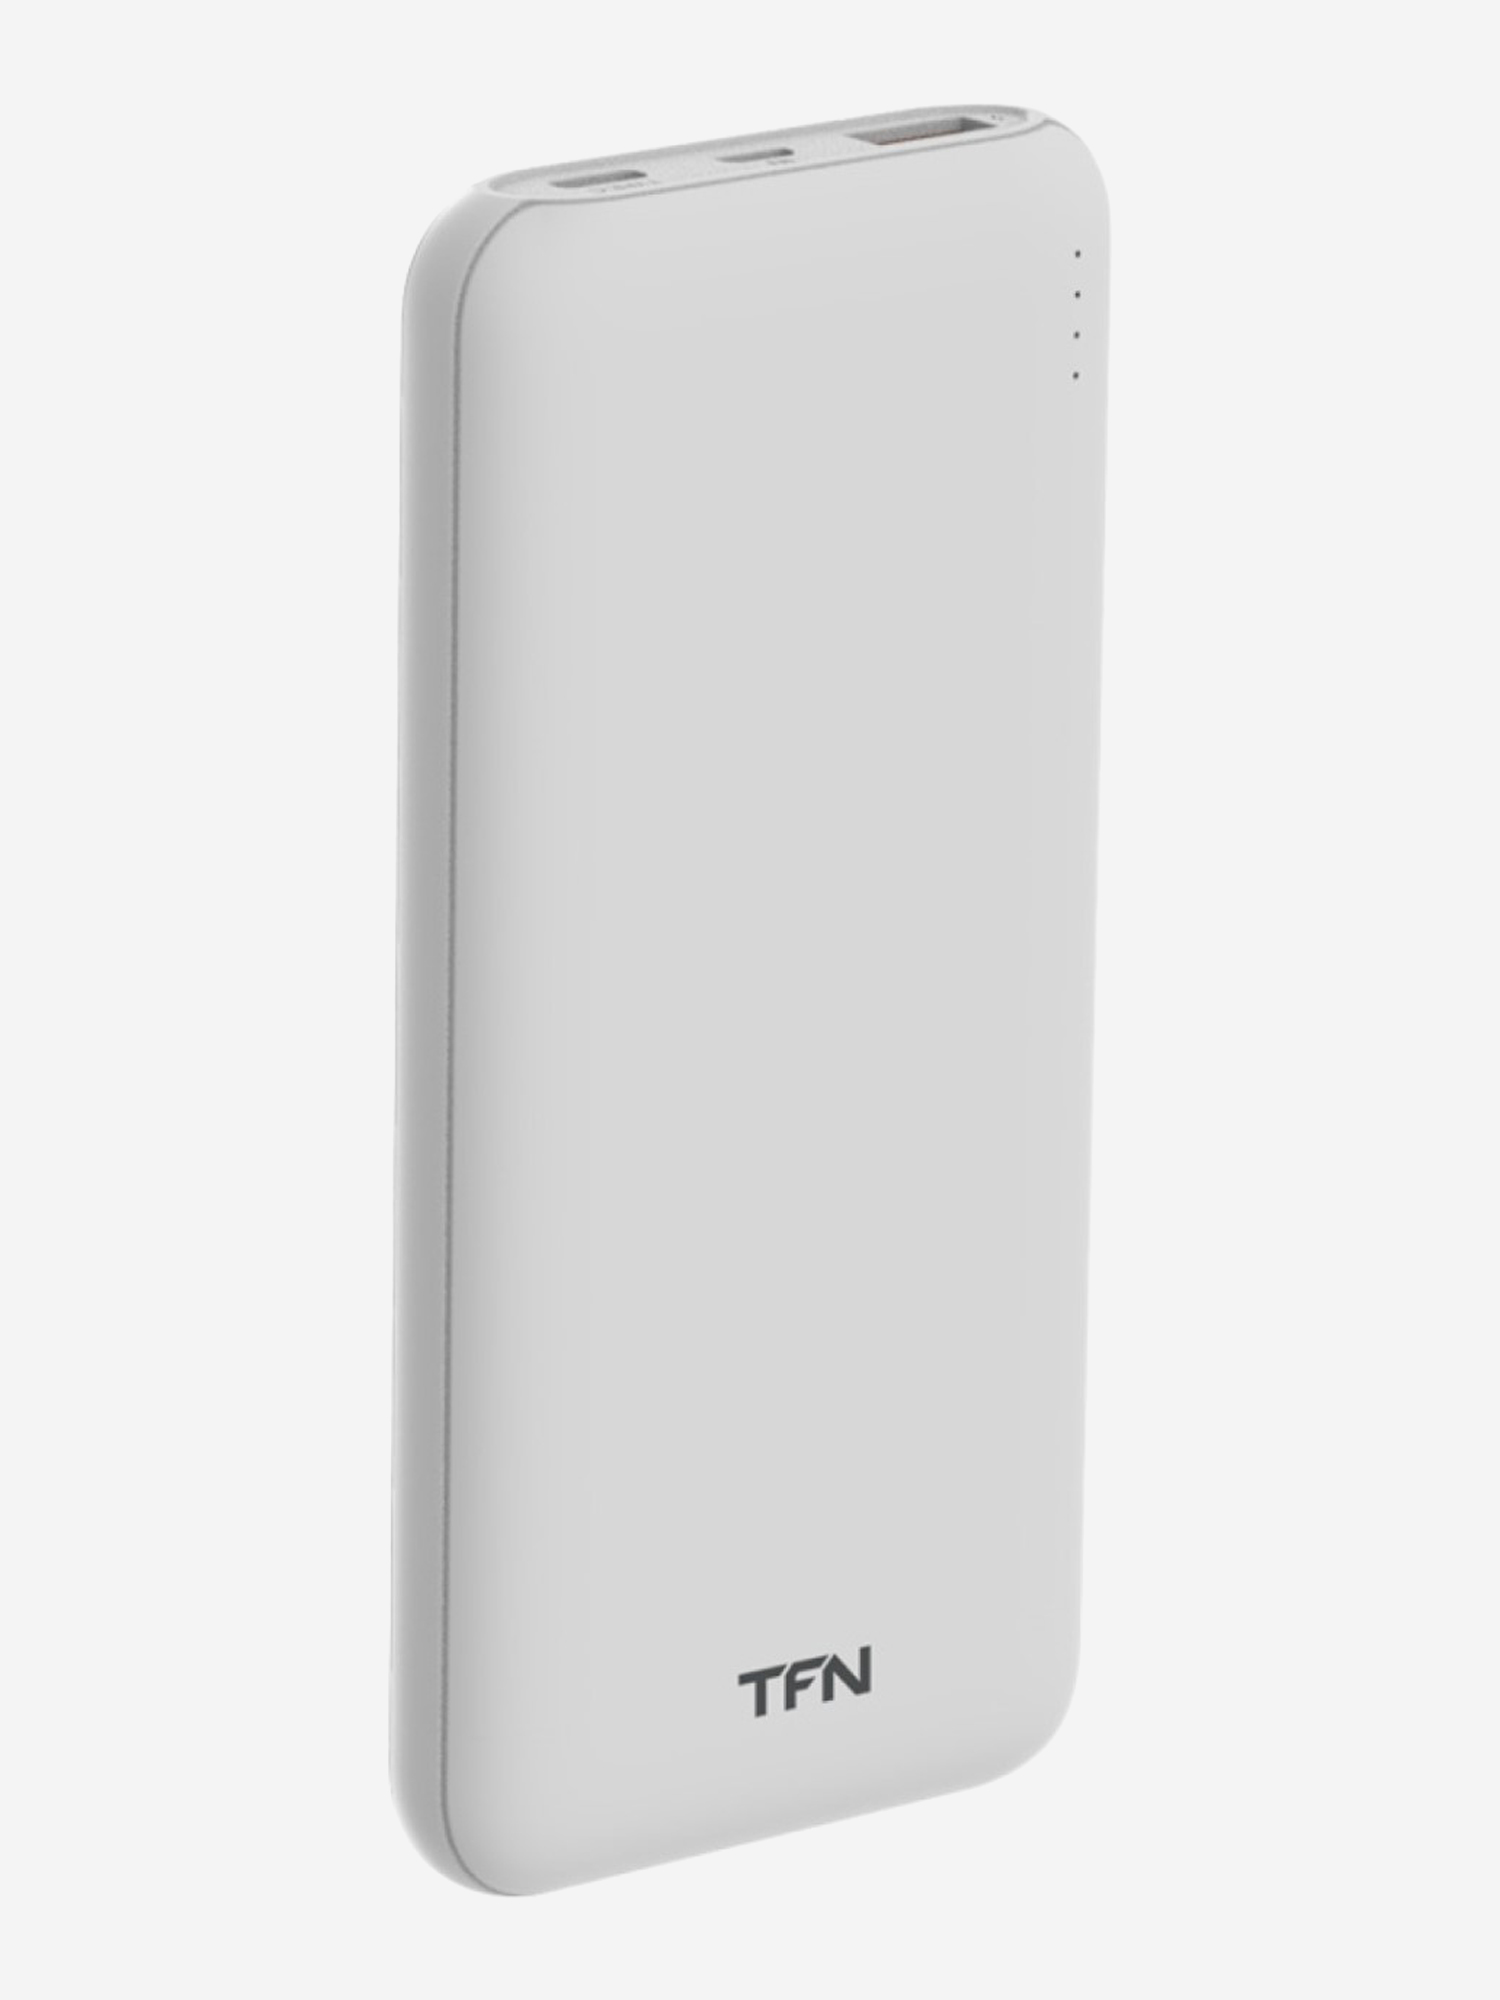 Внешний аккумулятор TFN 10000mAh Ultra Power PD white, Белый внешний аккумулятор luazon pb 29 li pol 10000 мач 2 usb type c microusb 2 1 a 1 a